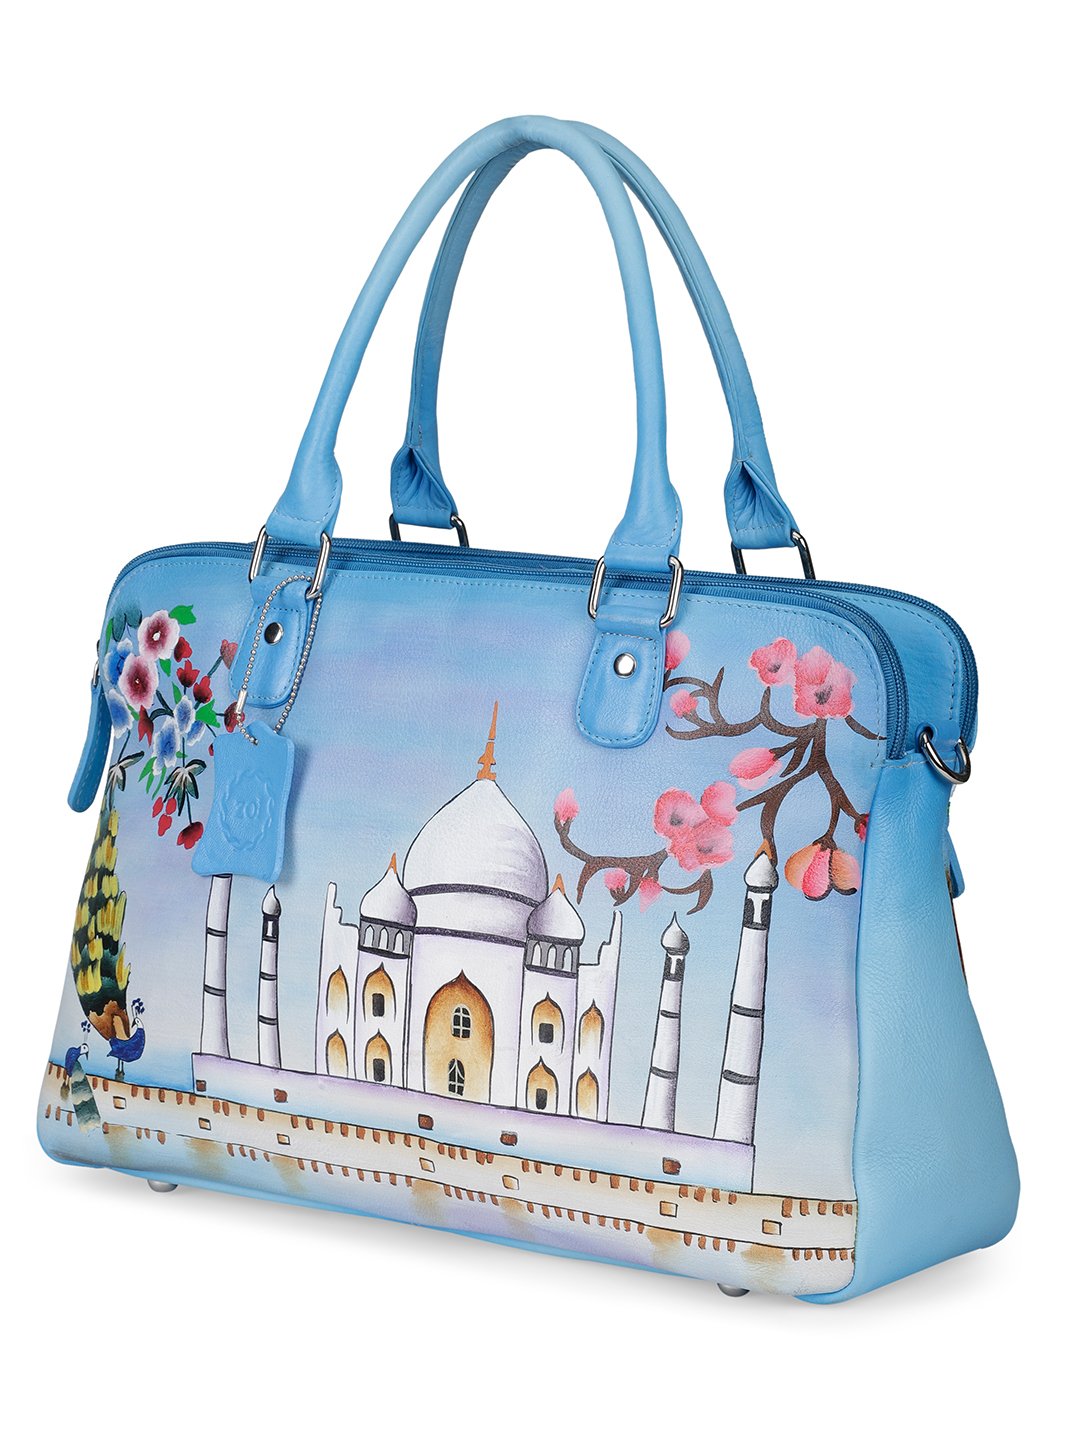 Taj Guldasta Classic Handbag